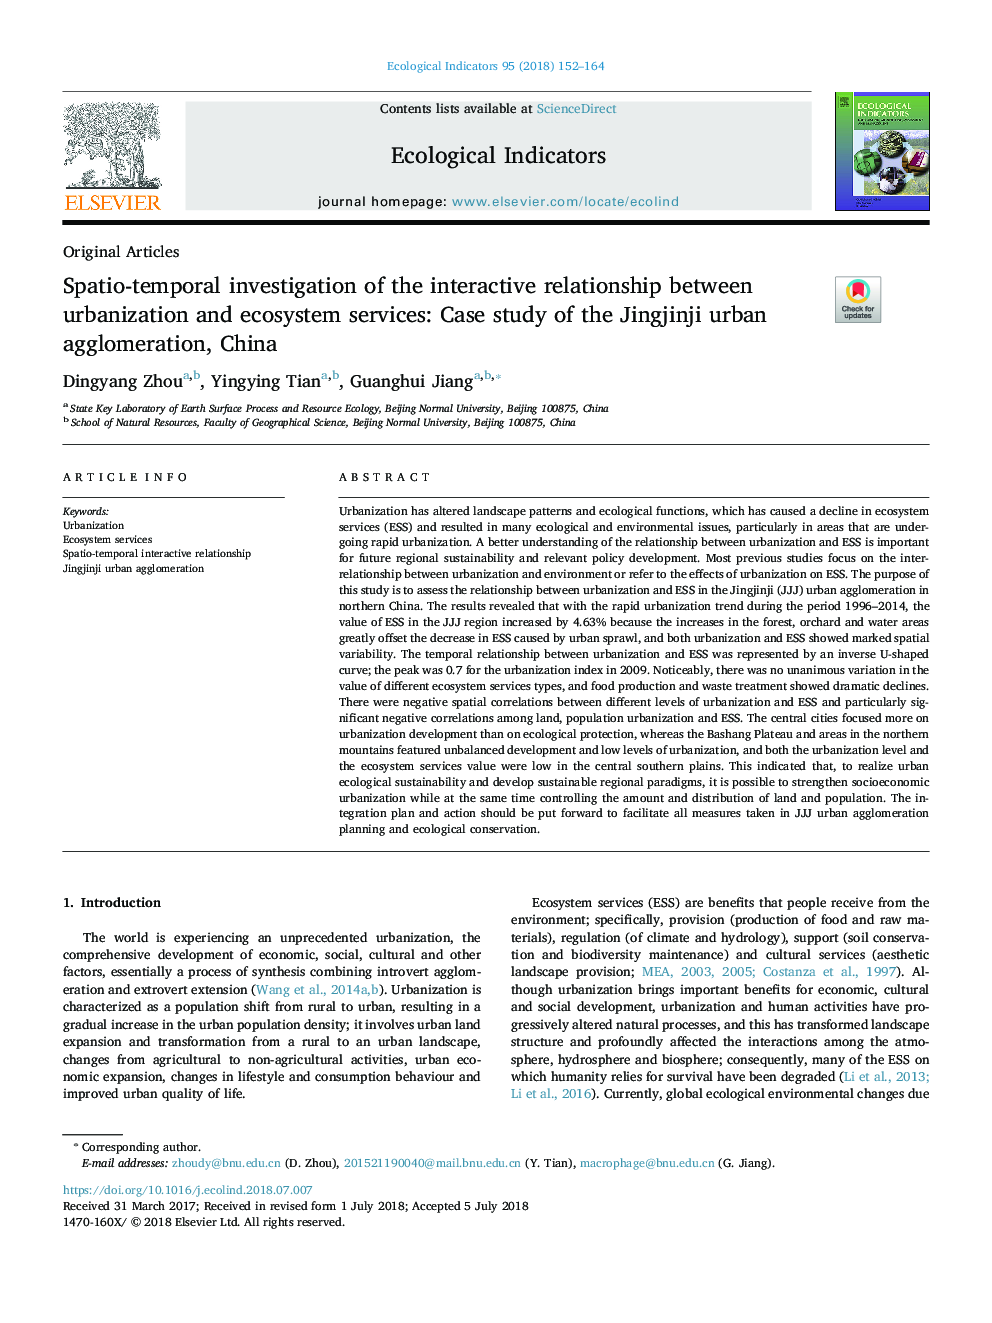 بررسی فواصل زمانی بین روابط تعاملی میان شهرنشینی و خدمات اکوسیستم: مطالعه موردی شهرک سازی شهری جینگجی جی، چین 